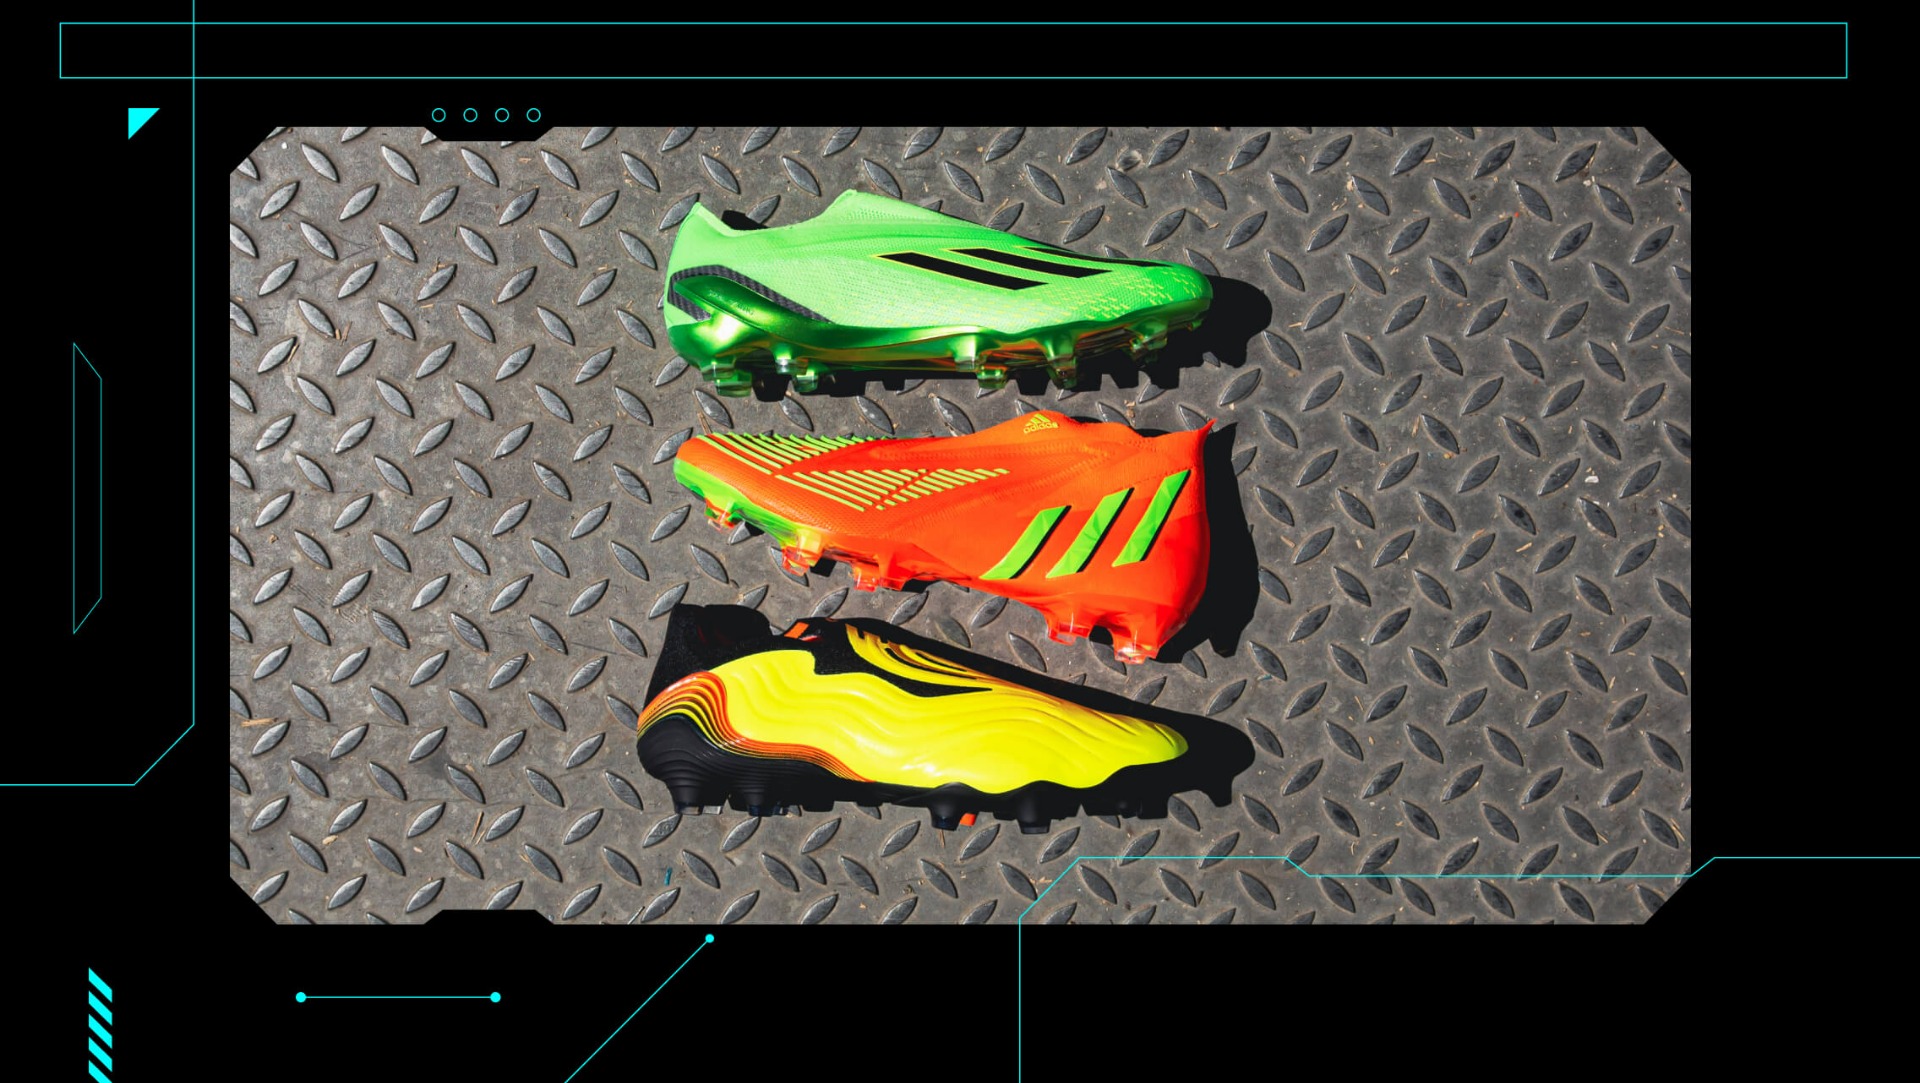 Prêt pour du jeu extraterrestre, voici le pack adidas GameData !